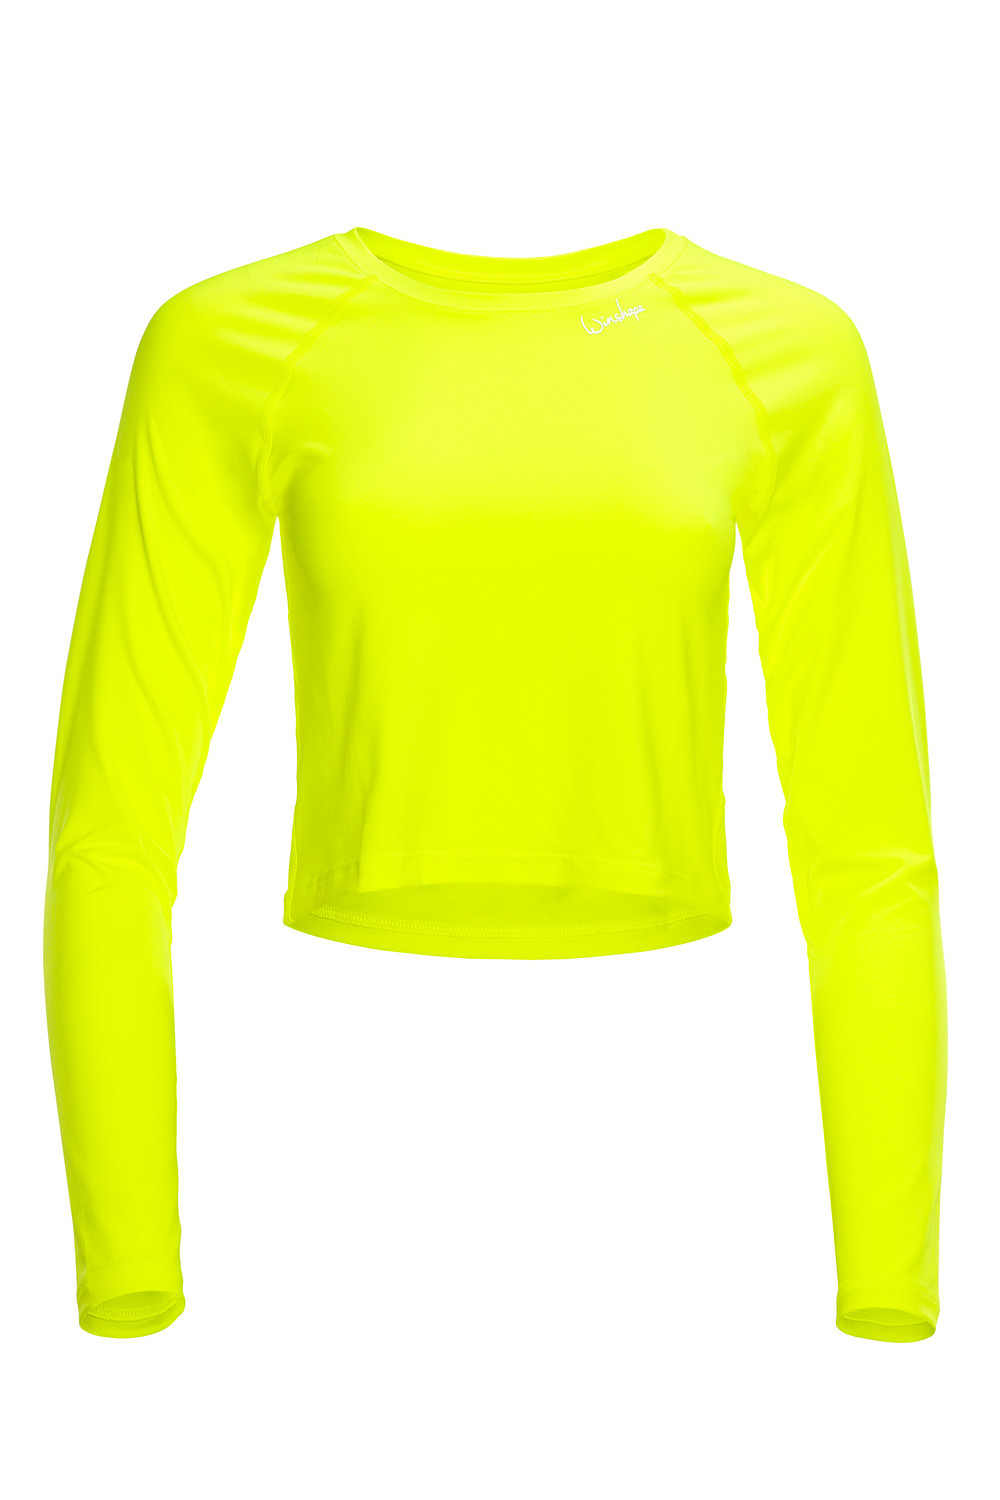 Cropped Light gelb, Style Functional Sleeve Winshape neon Long Top AET116, Slim